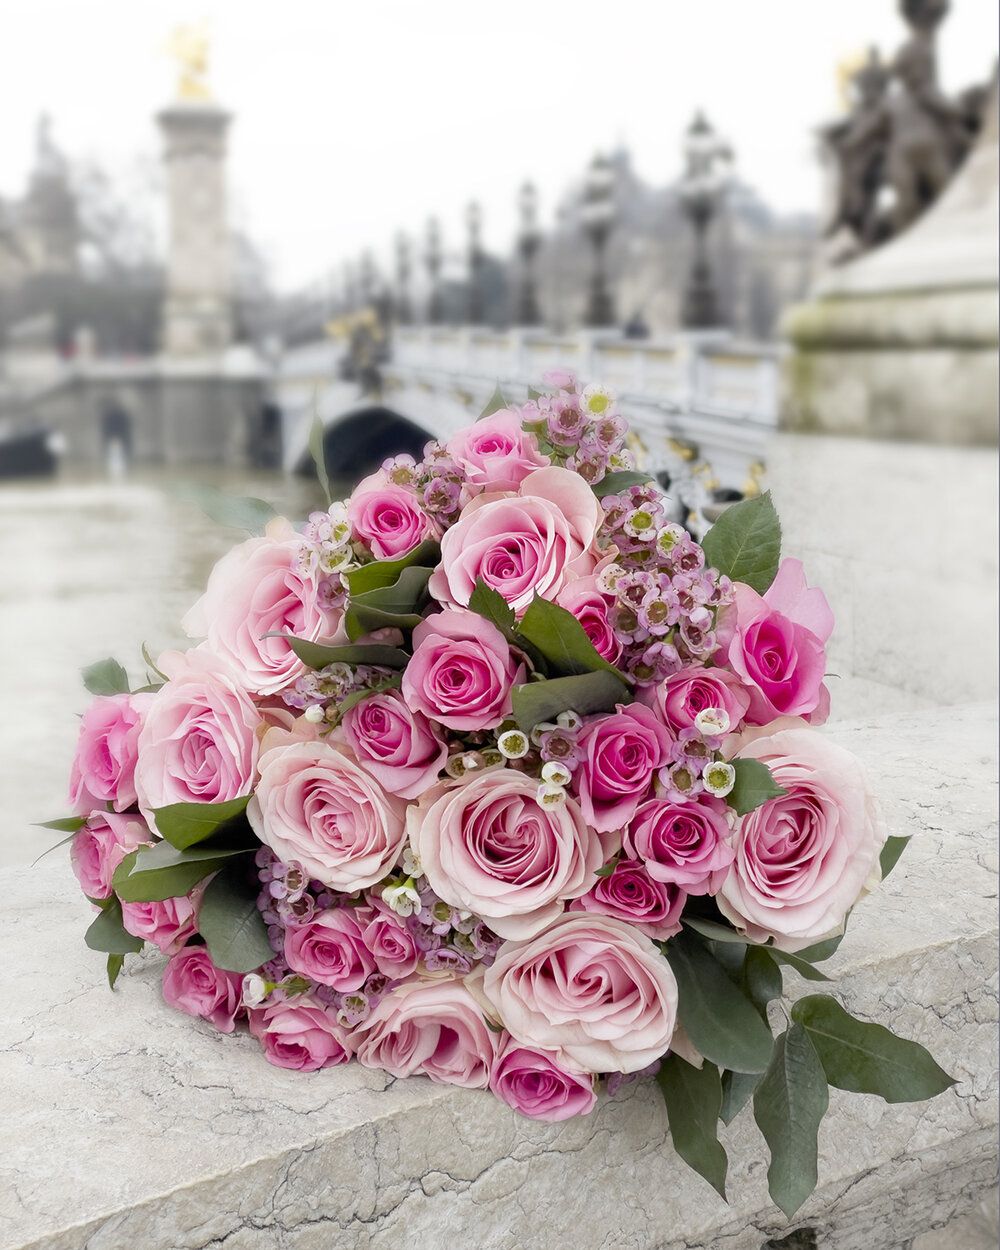 Paris rose bouquet by Pont Alexandre III — Parisian Moments